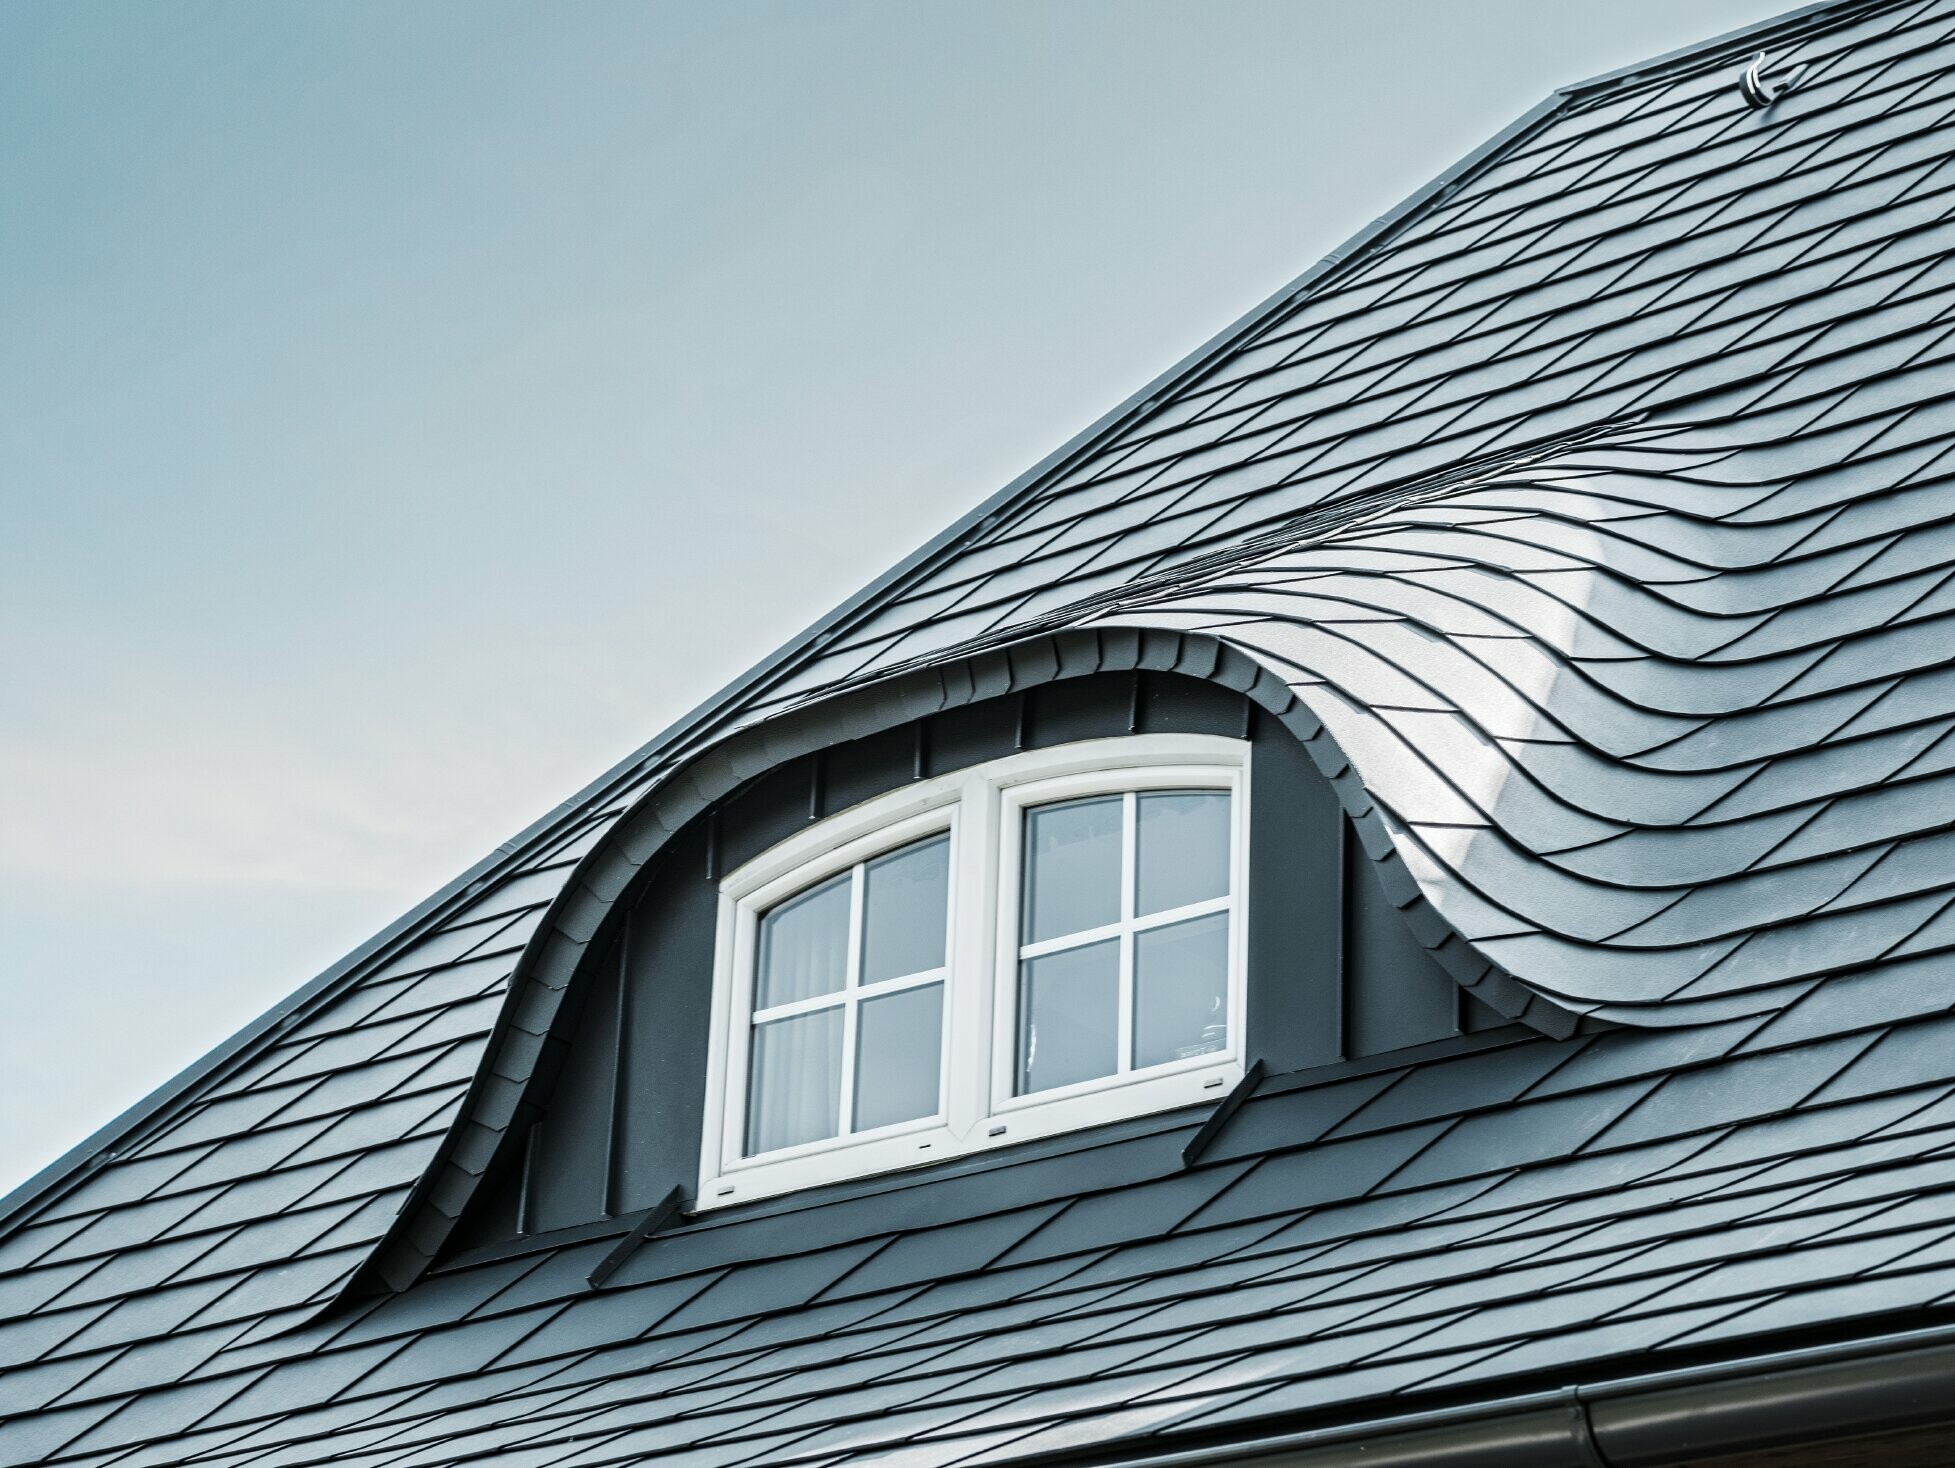 sanirani krov sa zaobljenom krovnom kućicom s prozorom obložen aluminijskim šindrama tvrtke PREFA u P.10 antracit boji 